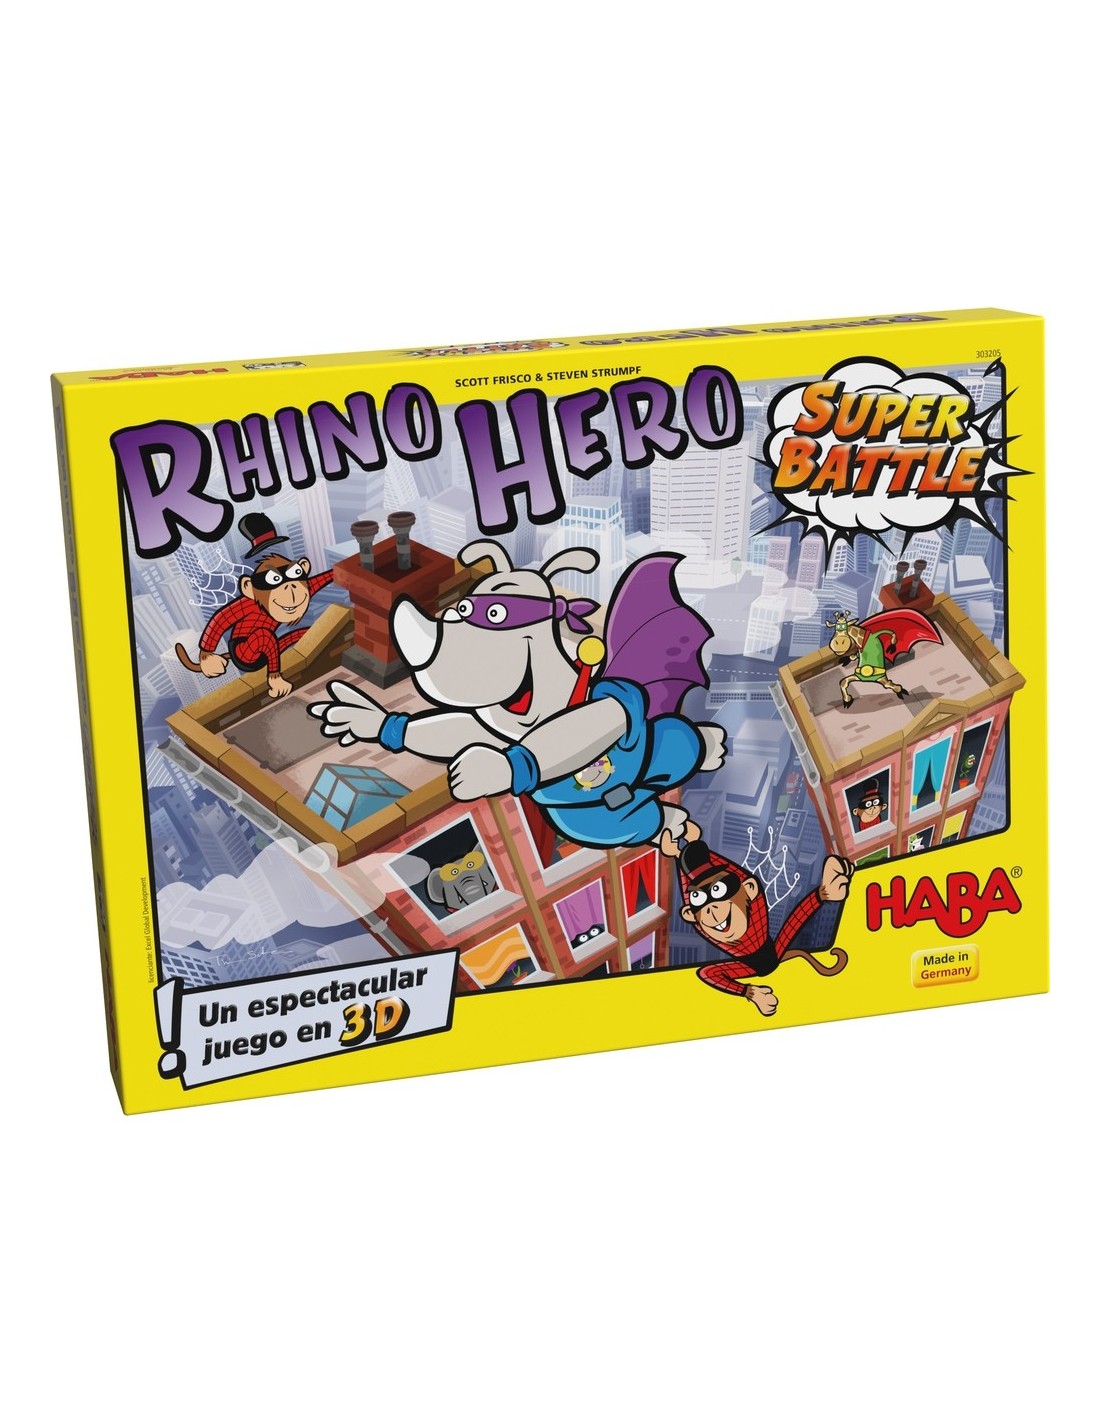 Rhino Hero Super Battle Juego de Mesa en Español